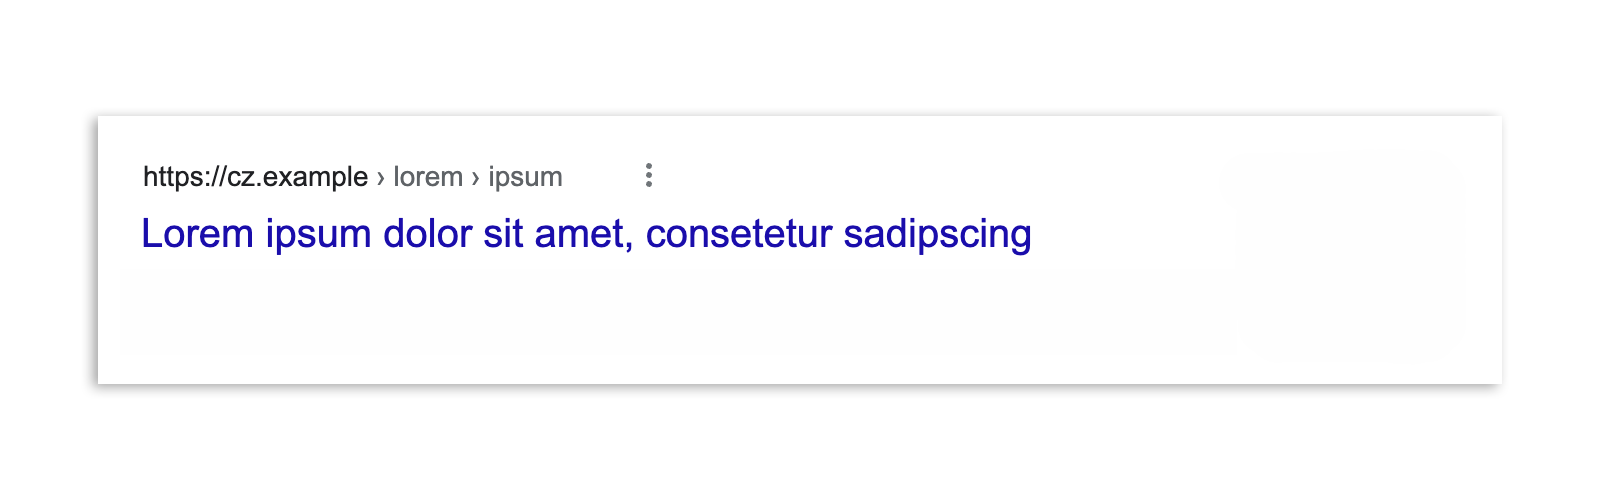 Wynik wyszukiwania Google w Czechach po wprowadzeniu przepisów, który pokazuje tylko nagłówek artykułu i adres URL.